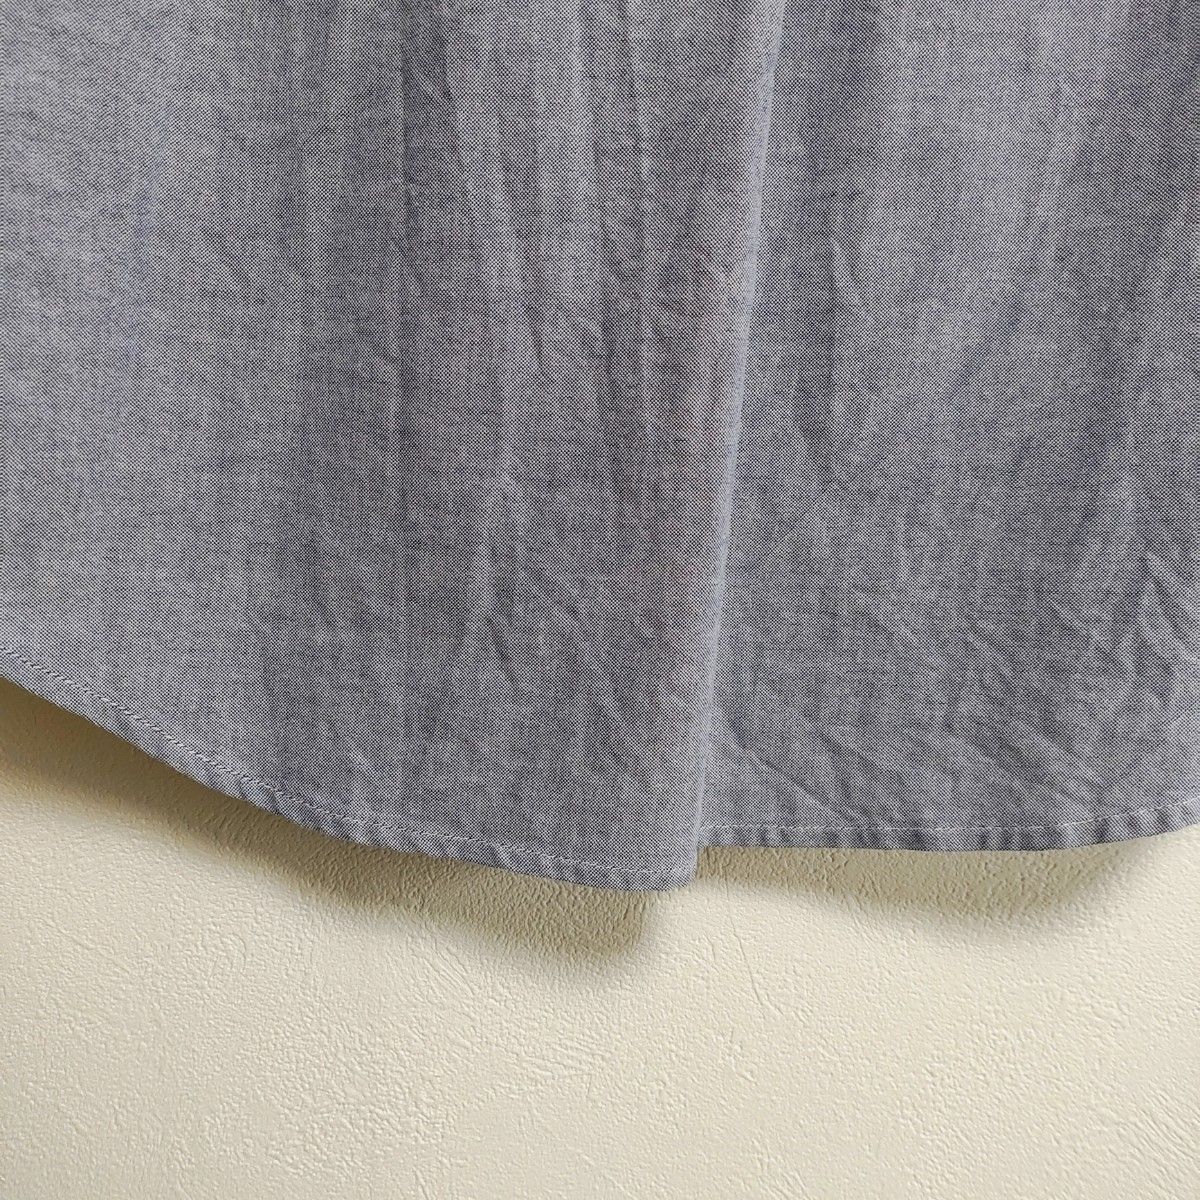 ユニオンステーション メンズビギ メンズ 七分袖 ボタンダウンシャツ 綿100% グレー サイズ02(M相当) 美品